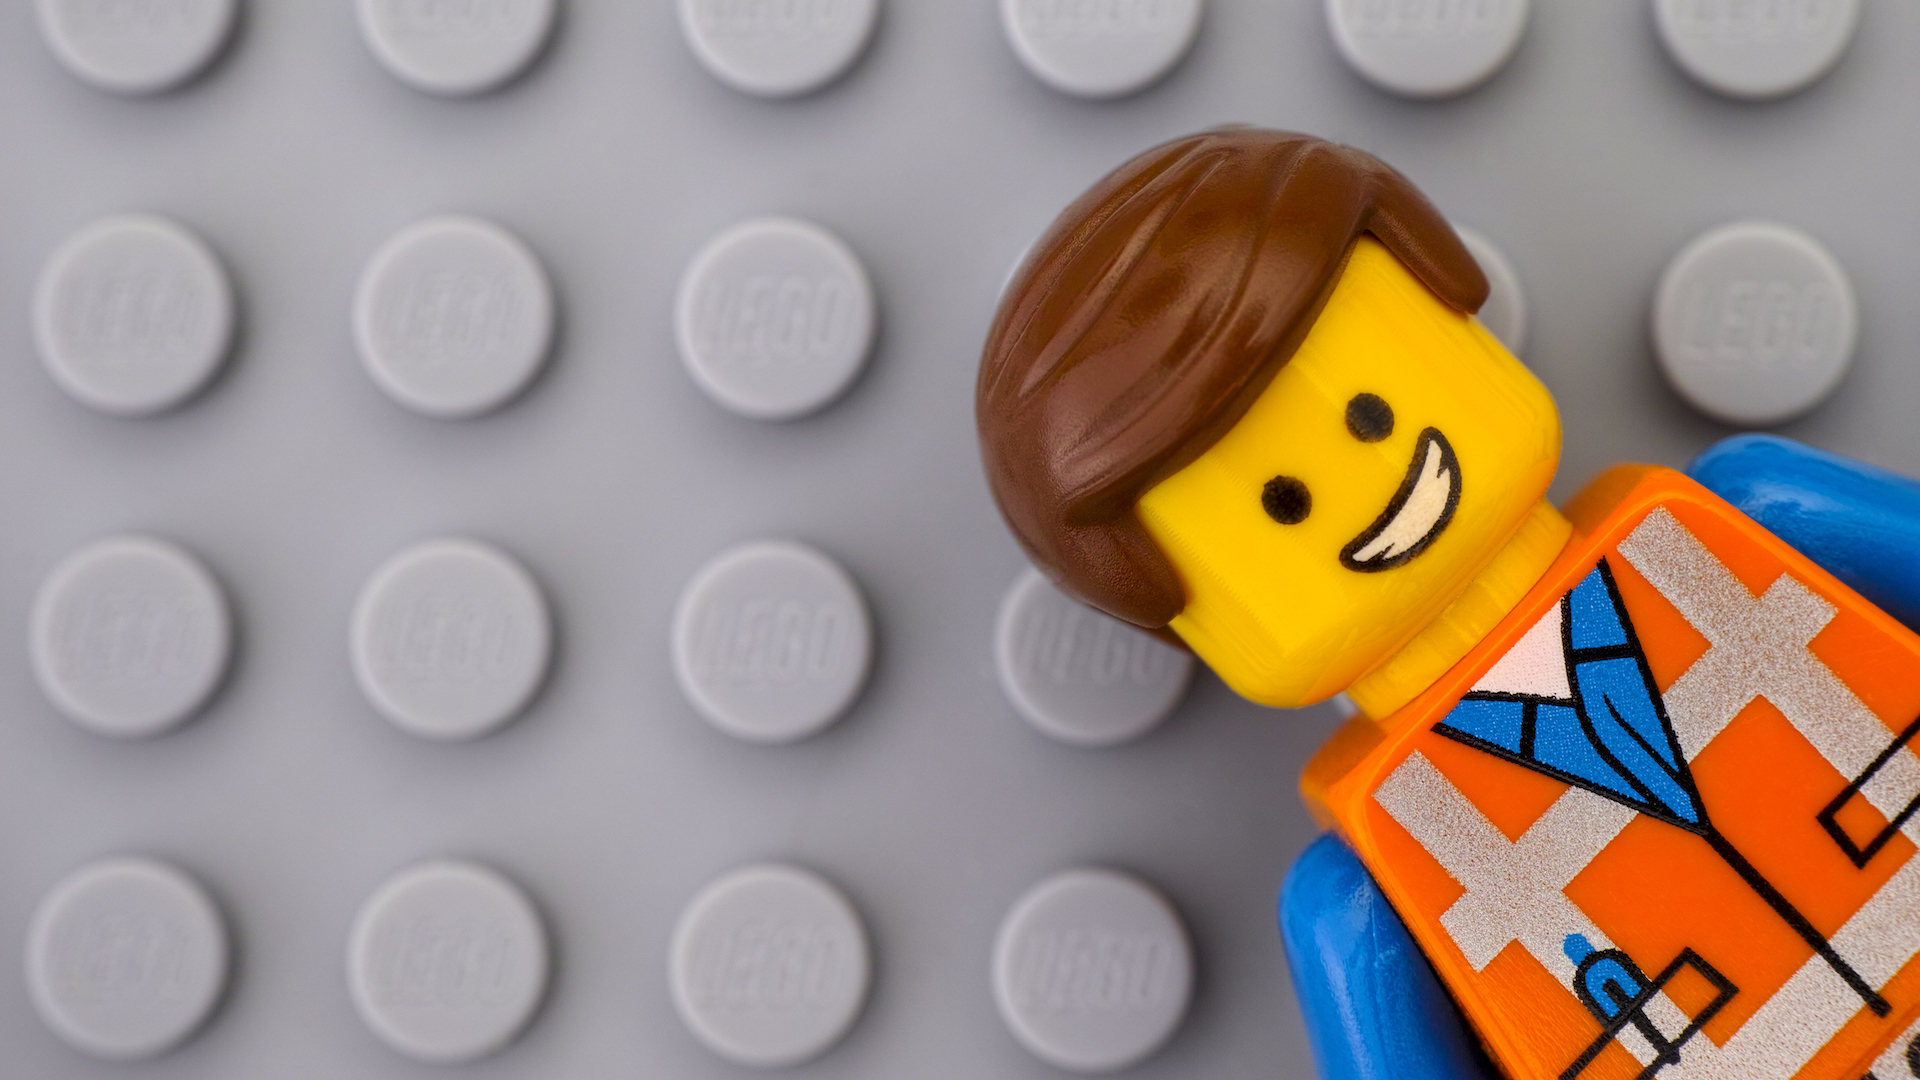 Emmet Brickowski from The Lego Movie